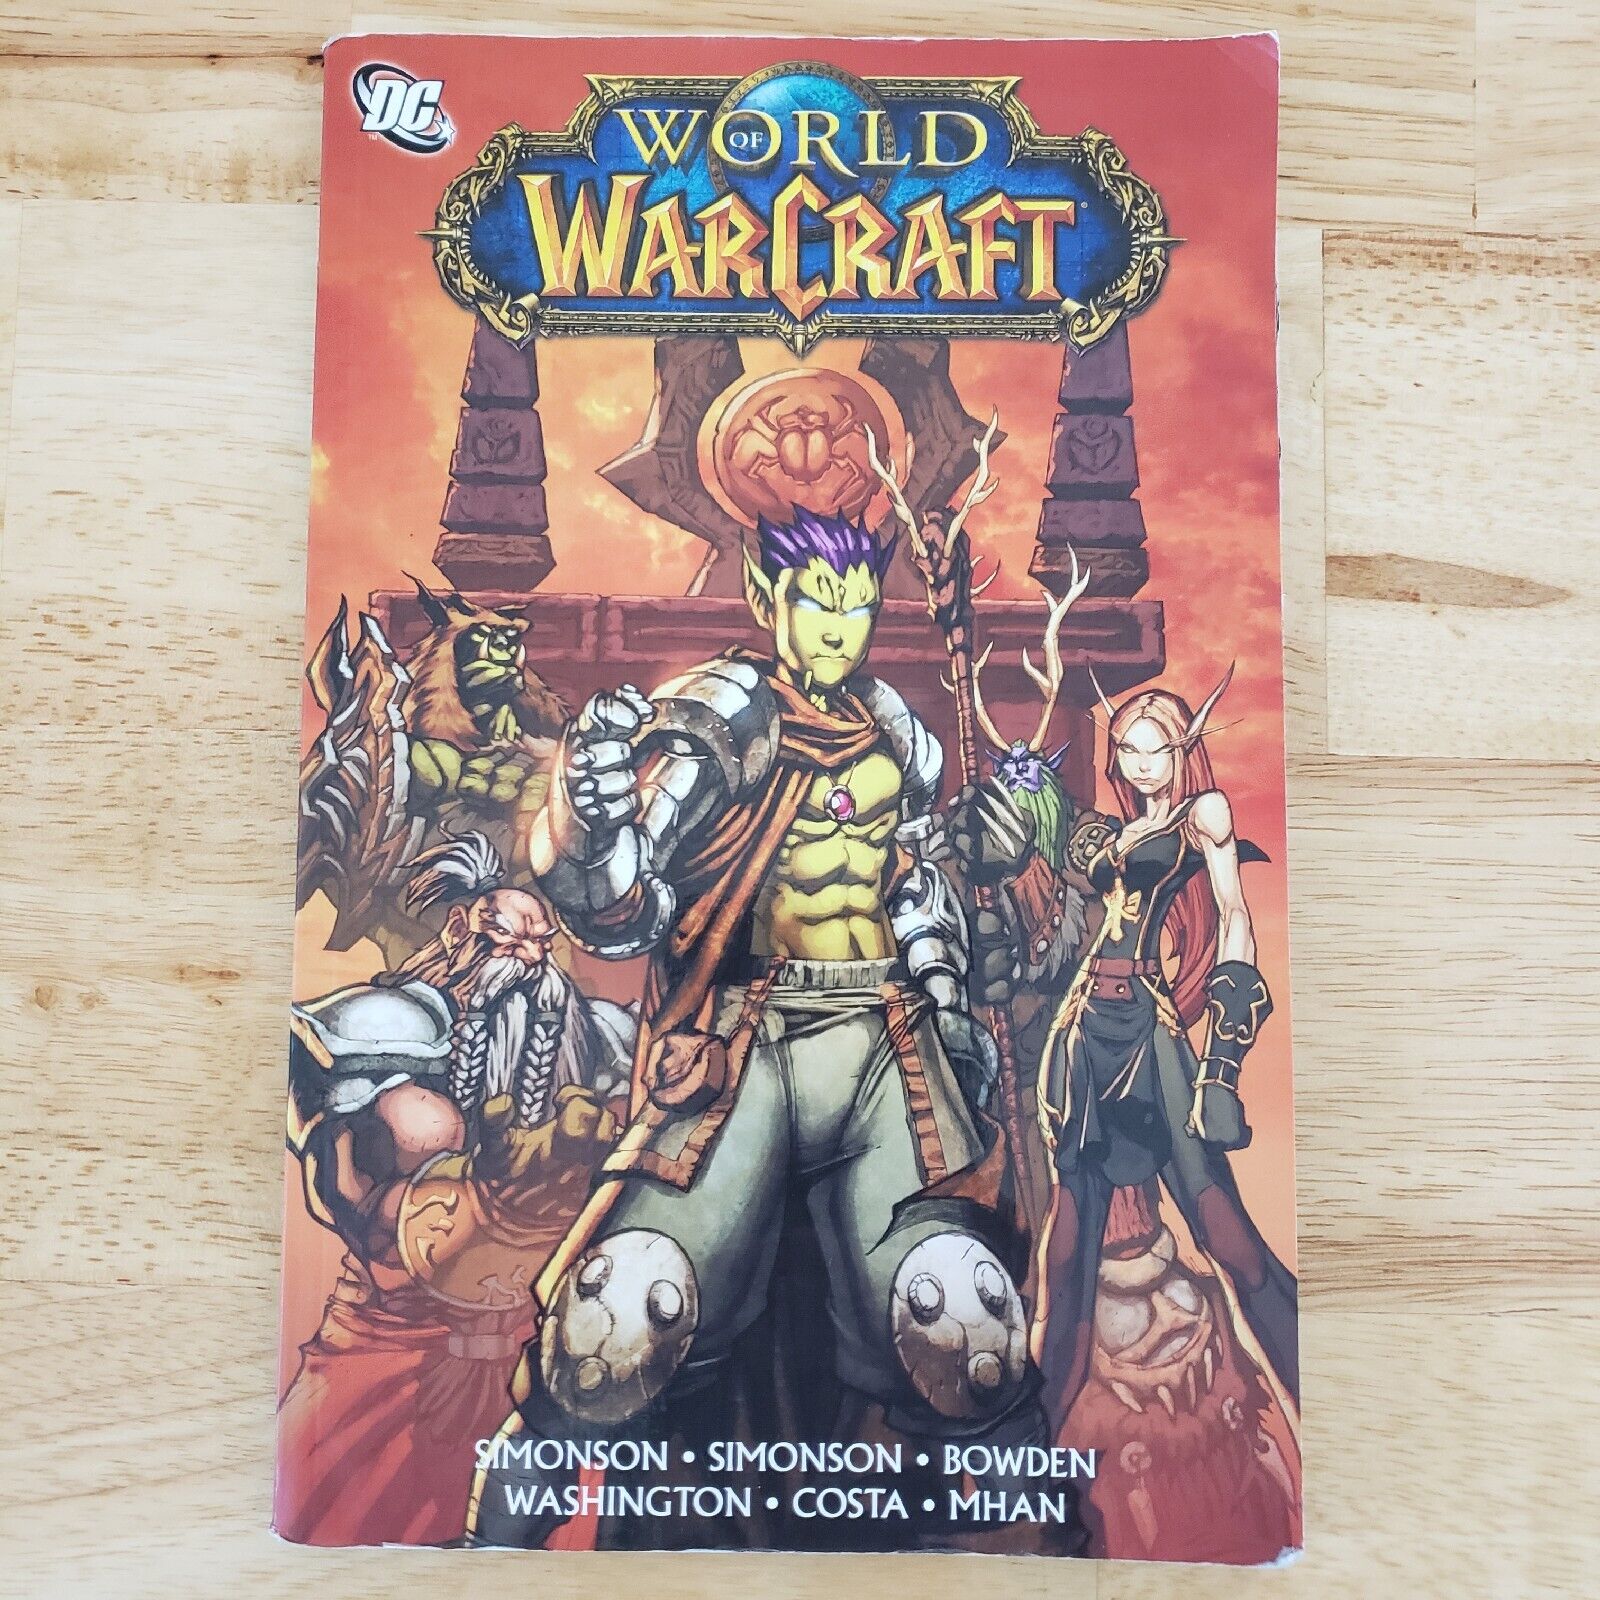 World of Warcraft #4 (DC Comics, October 2011)